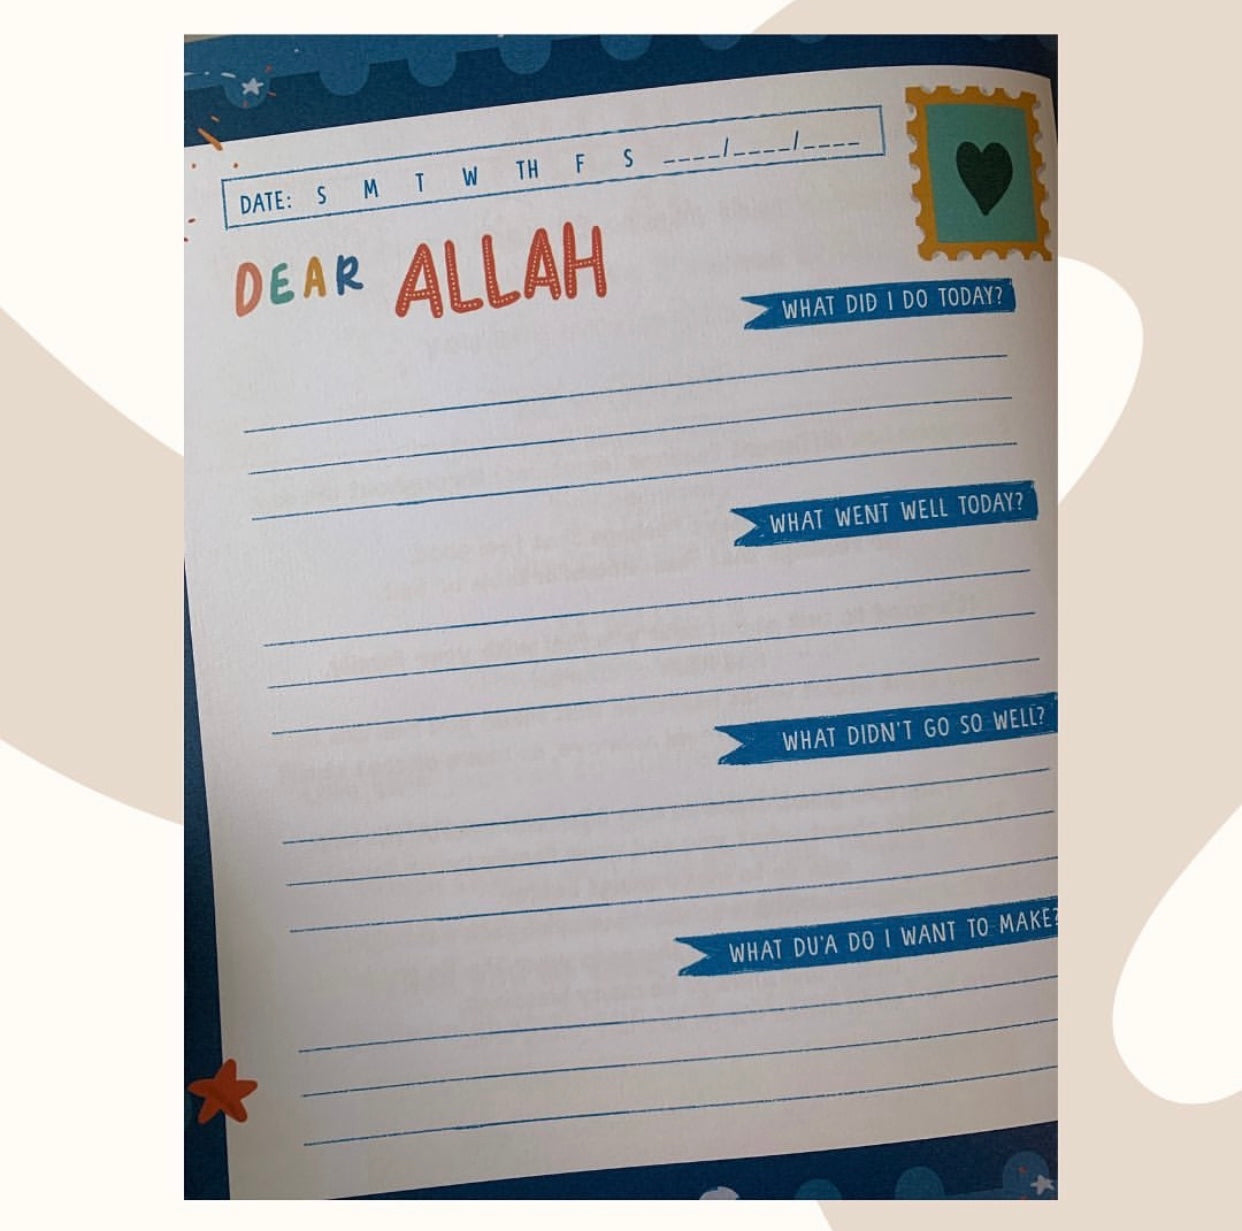 Dear Allah - A Muslim Child’s Journal